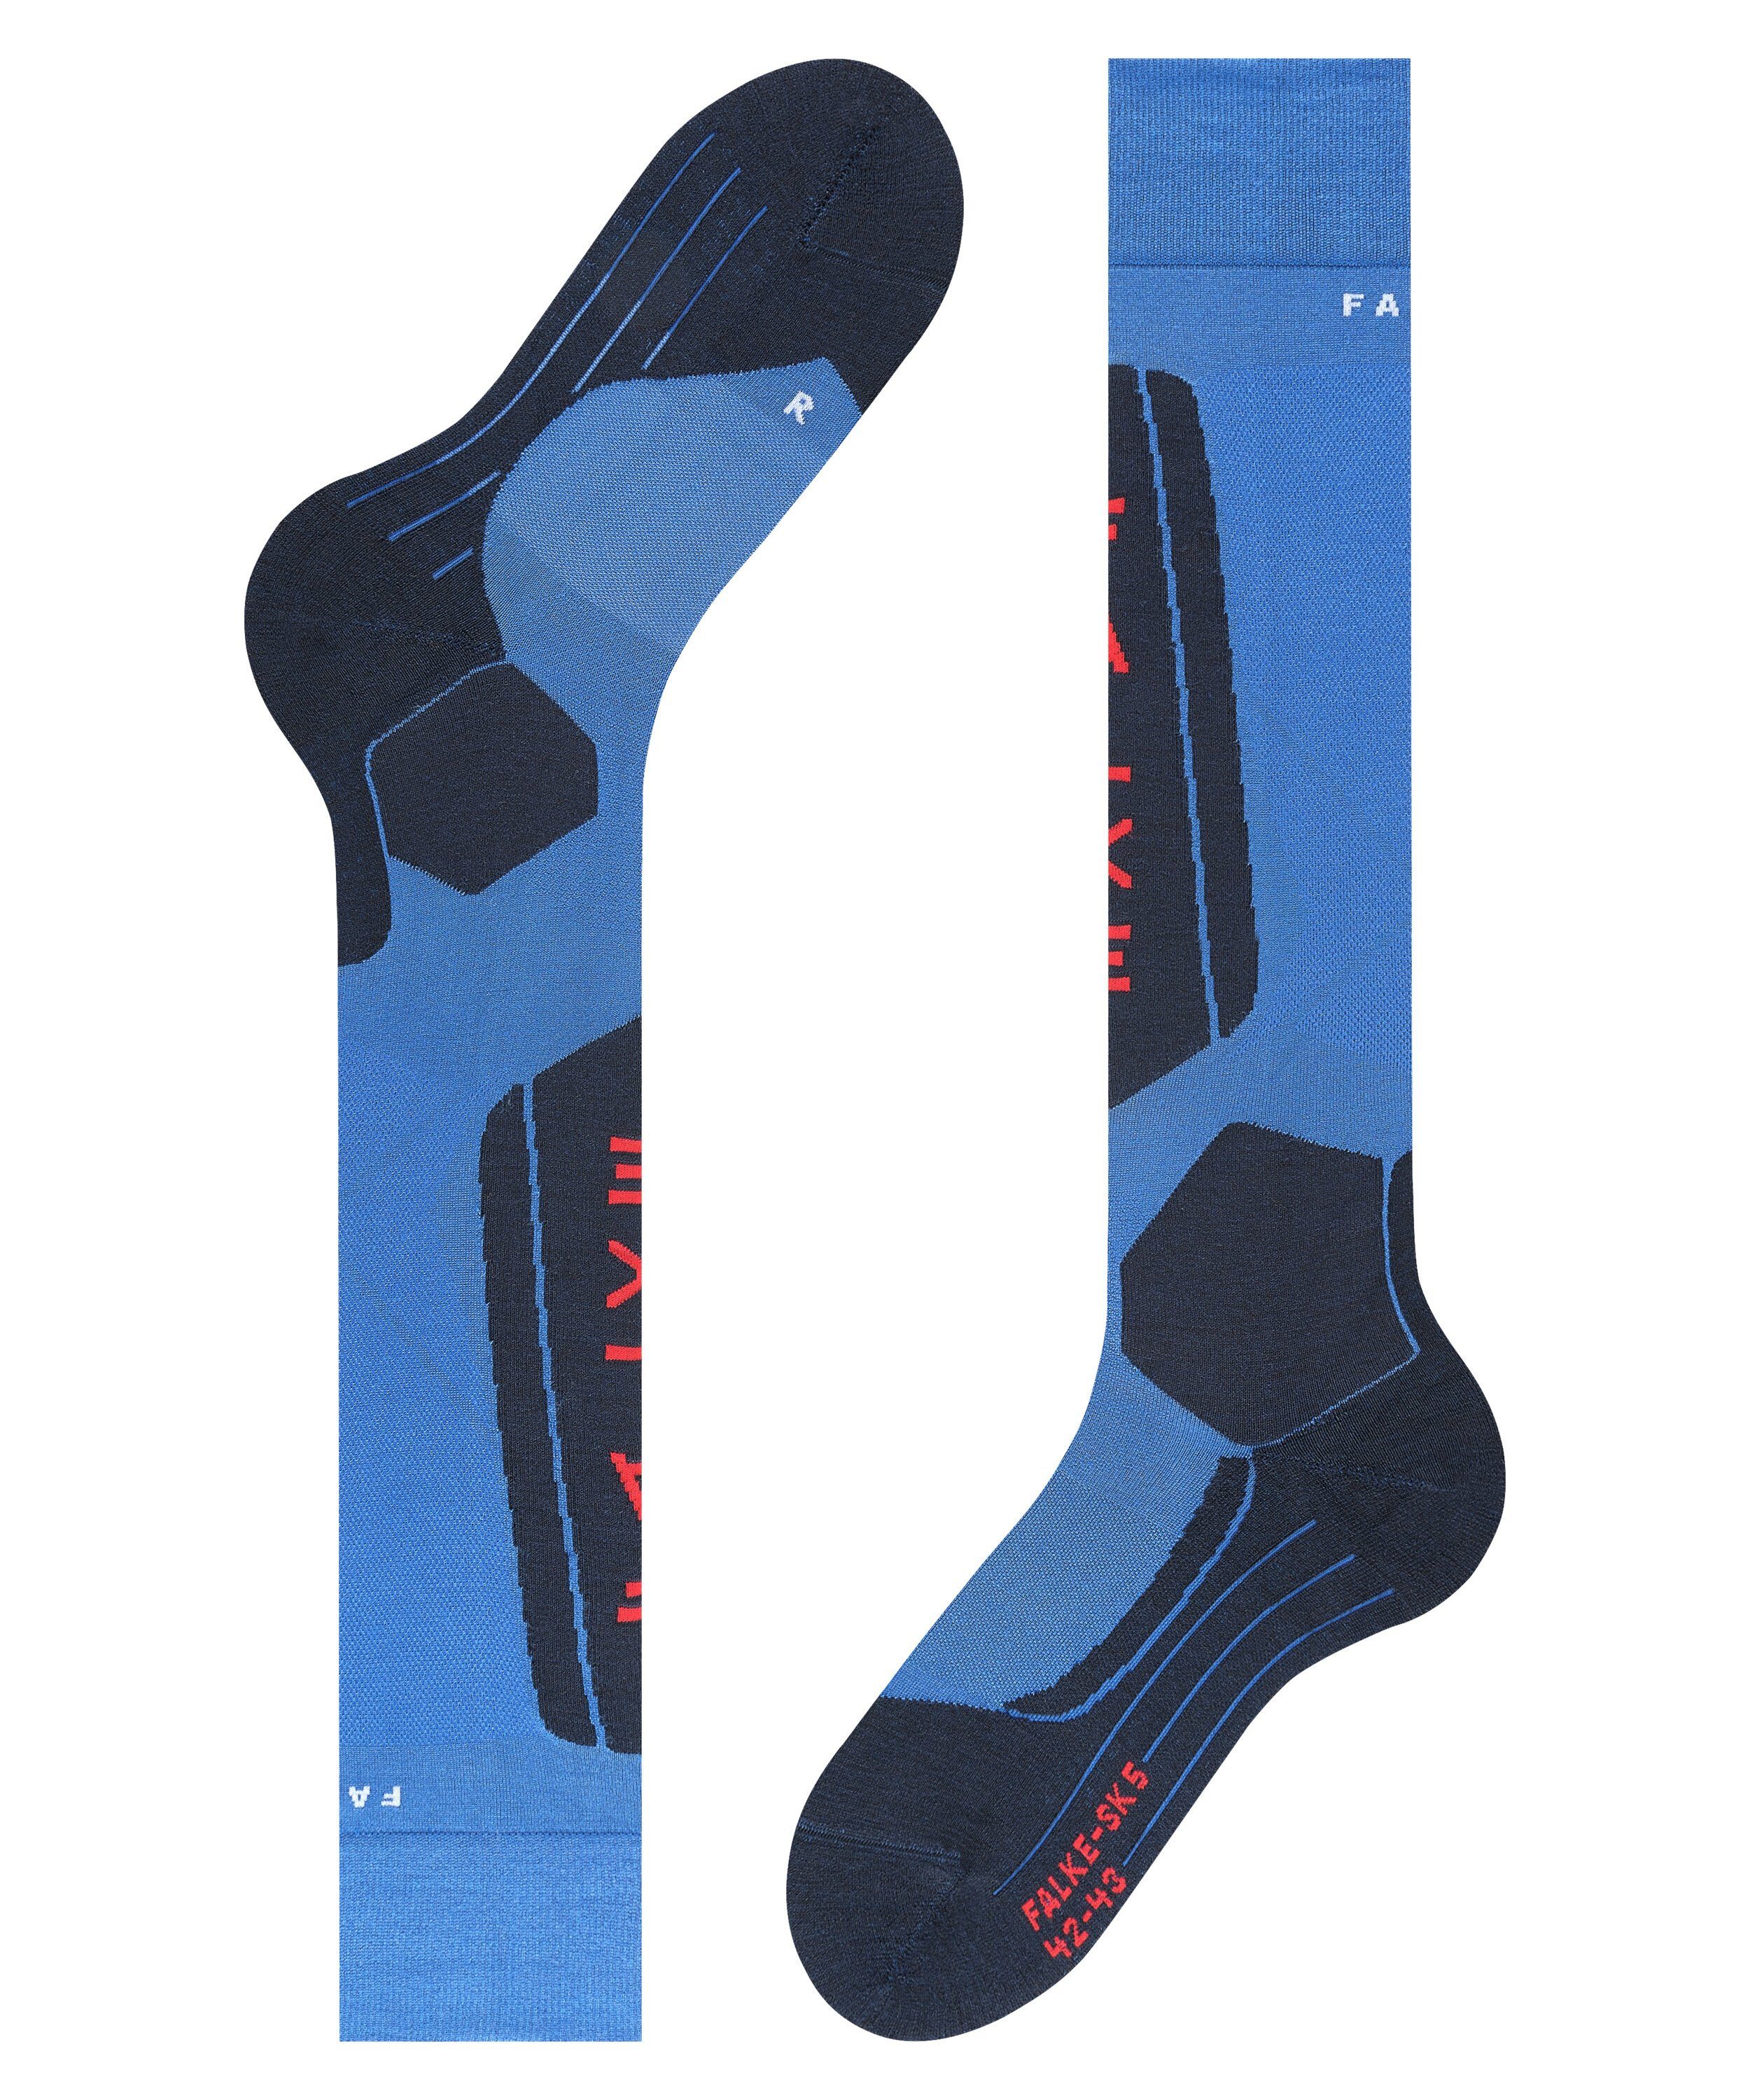 FALKE Skisocken SK5 Expert olympic (6940) ultraleichte direkte Kontrolle (1-Paar) Polsterung für